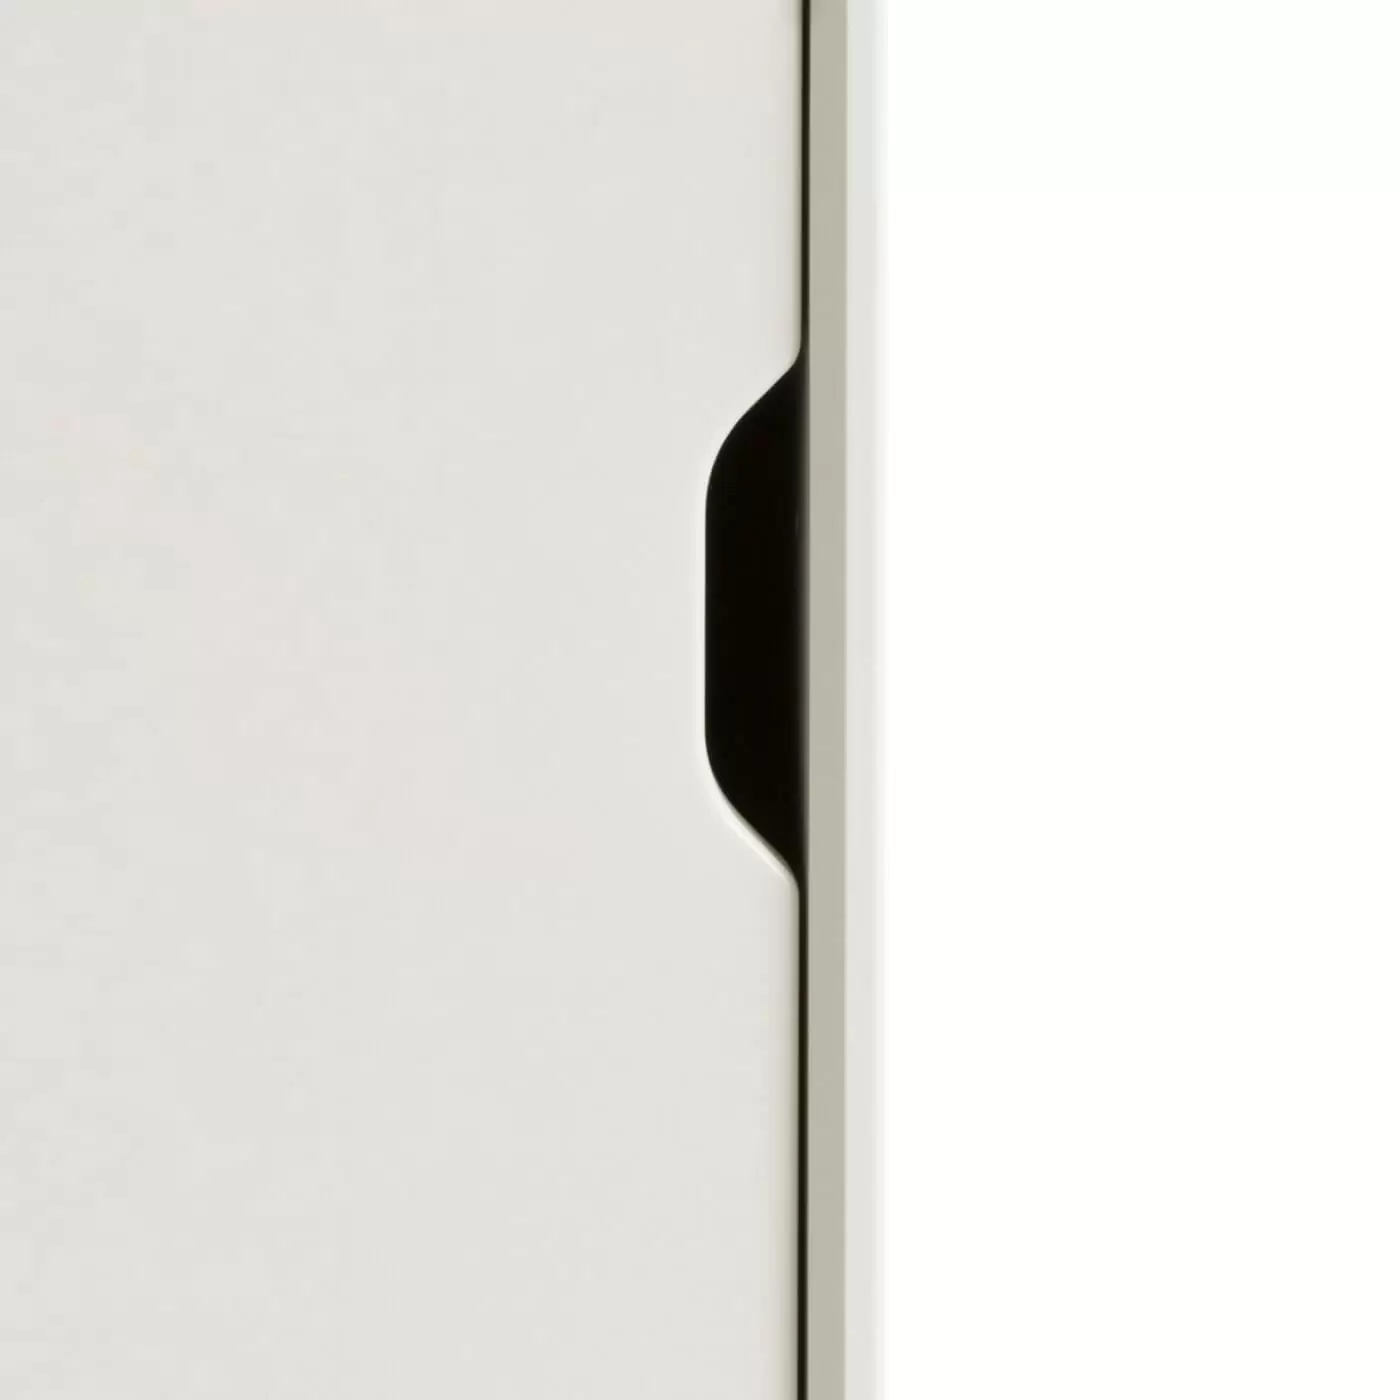 Szafka nocna biała mat KOLO. Ręcznie robiony niewystający uchwyt drewnianych drzwiczek skandynawskiej wąskiej szafki nocnej 30 cm lakierowanej na kolor biały. Minimalistyczny nowoczesny design